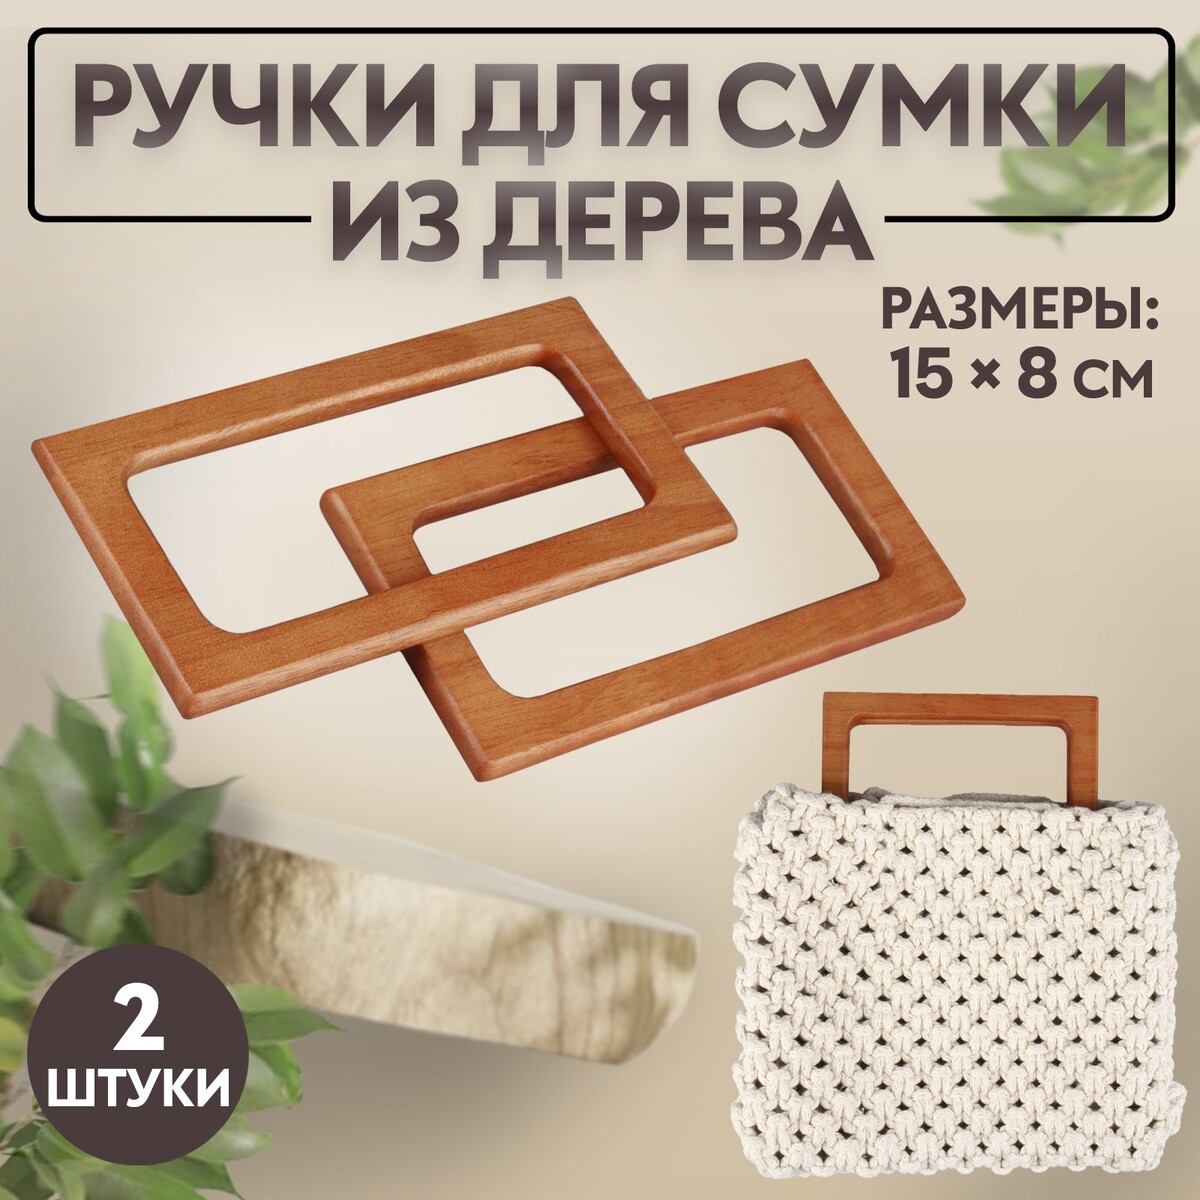 Ручки для сумки деревянные, 15 × 8 см, 2 шт, цвет светло-коричневый ручки для сумок деревянные плетеные d 9 8 × 5 9 13 5 × 9 5 см 2 шт коричневый